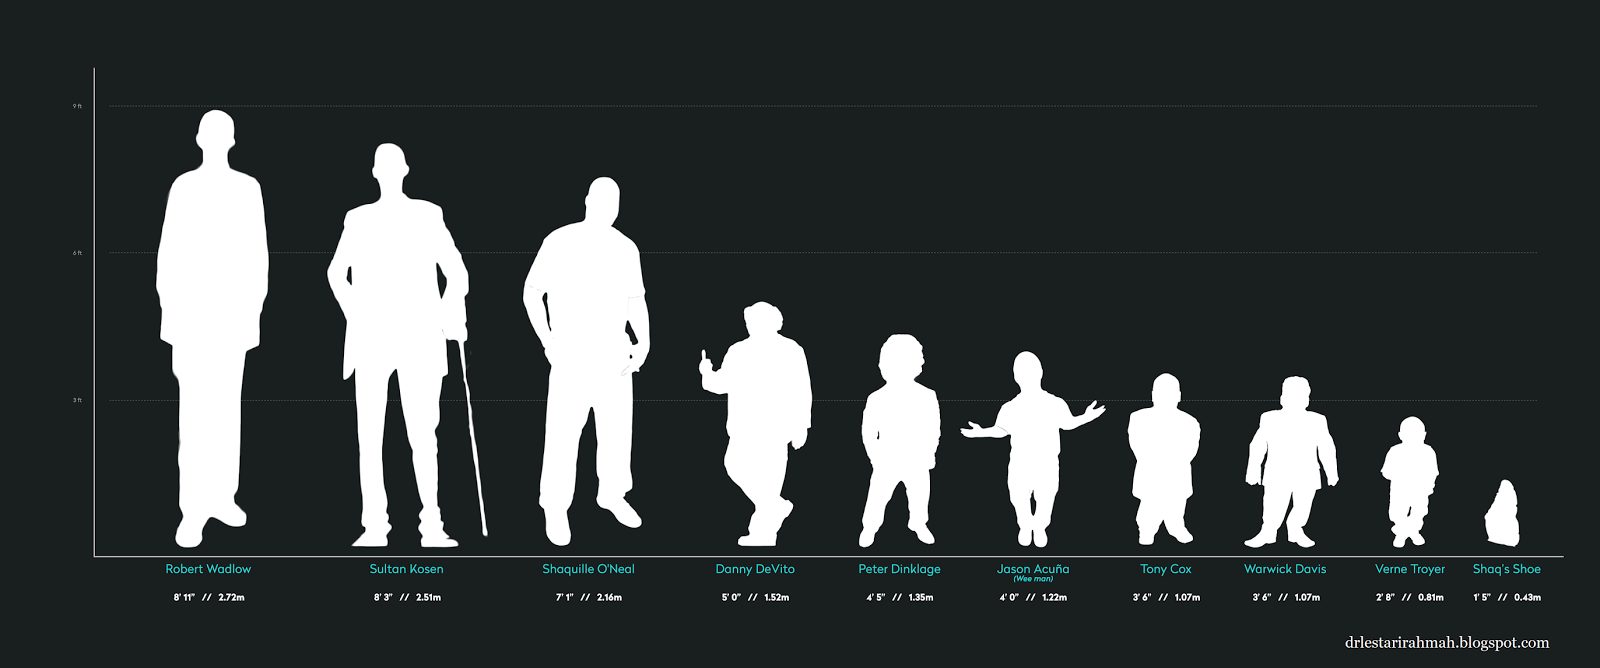 Рост человека сообщения. Рост человека. Сравнения рогсгта человека. Люди по росту. Сравнение роса человека.